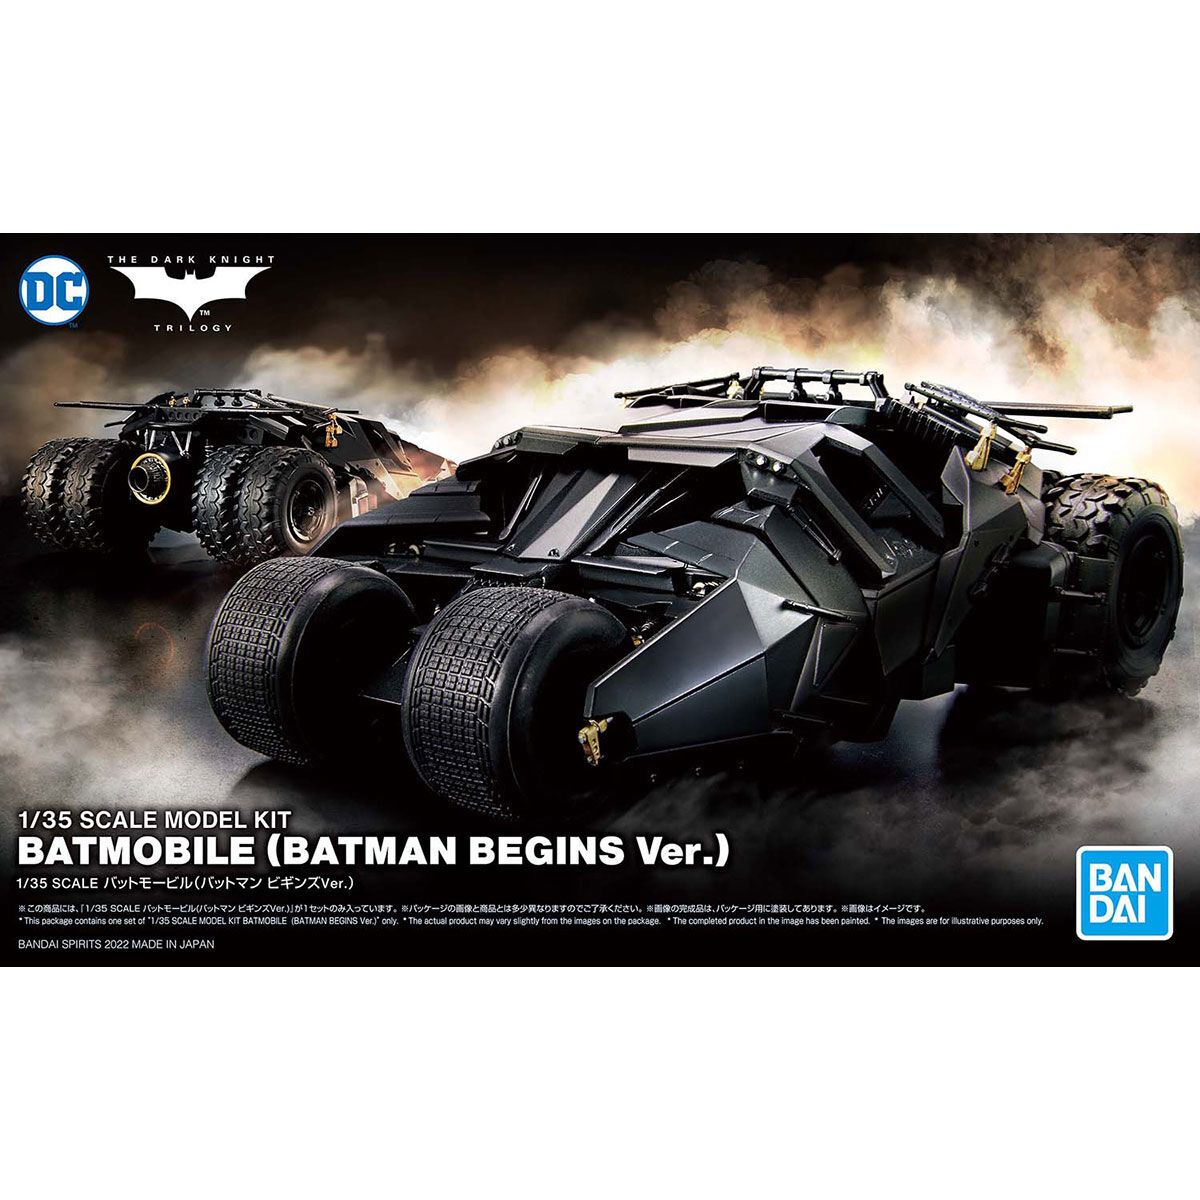 Bandai 1/35 Scale Batmobile (Tumbler Batman Begins Ver.) Model